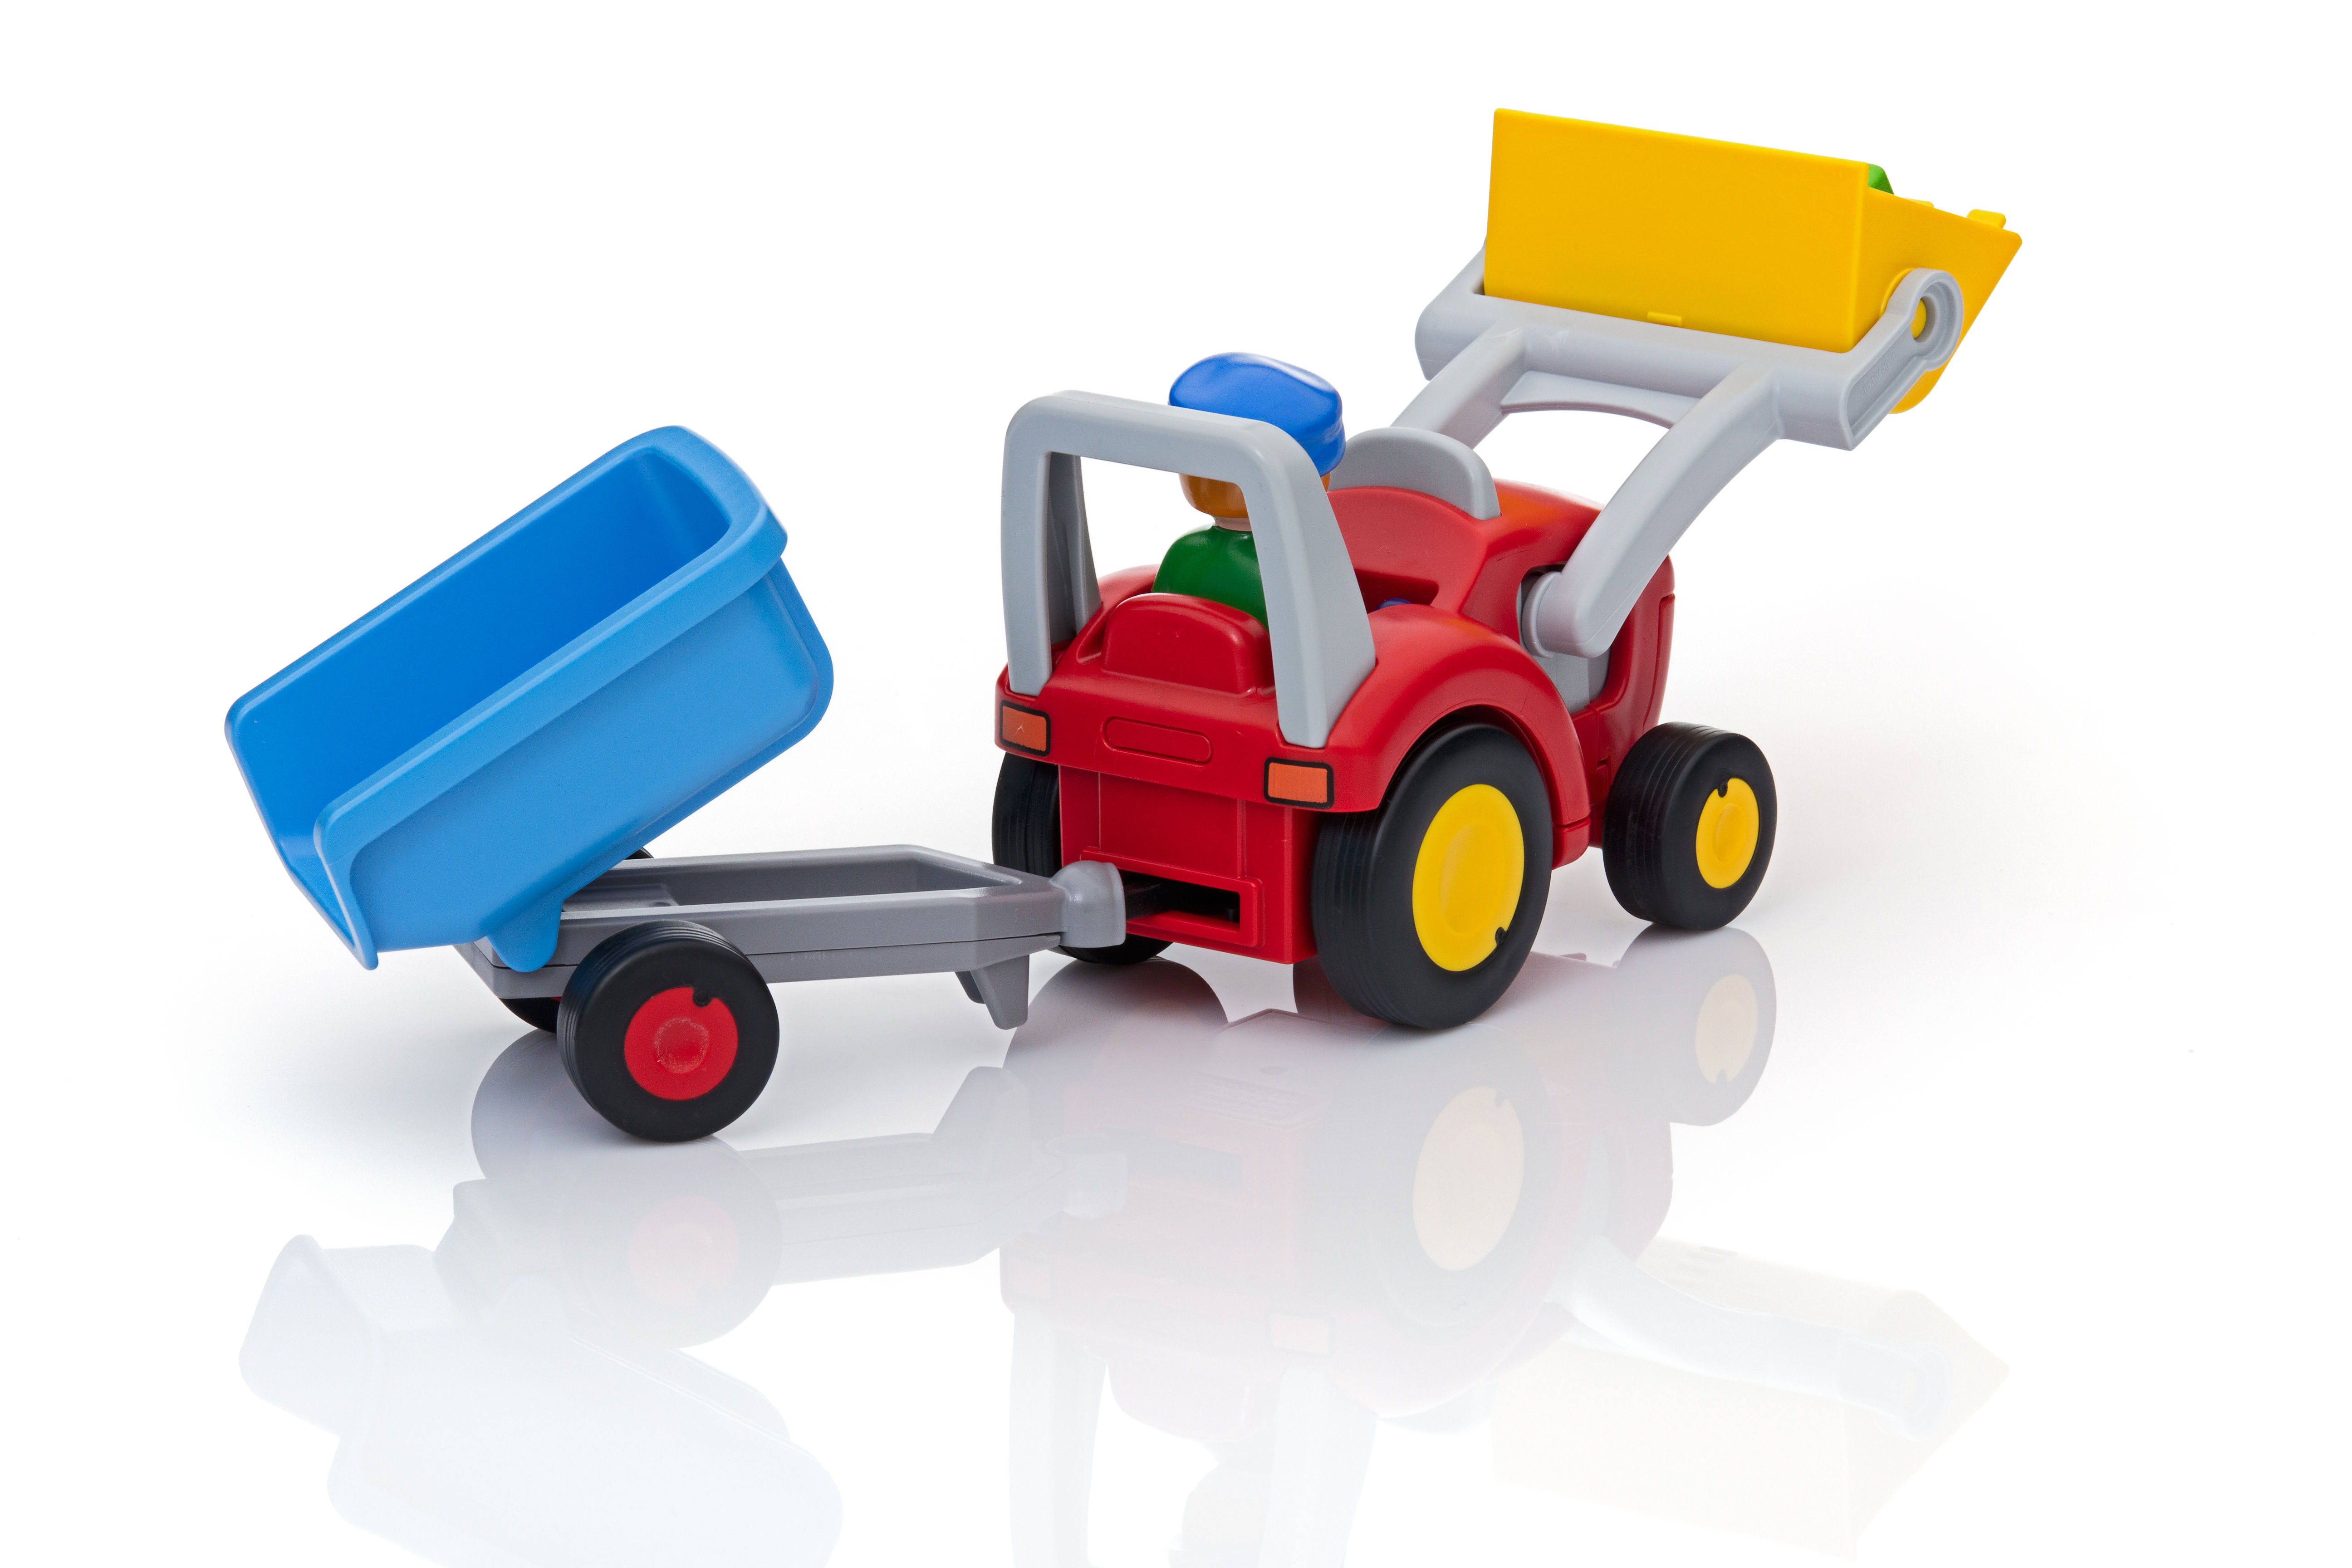 Playmobil n° 3066 - Fermier tracteur citerne - boite boxed